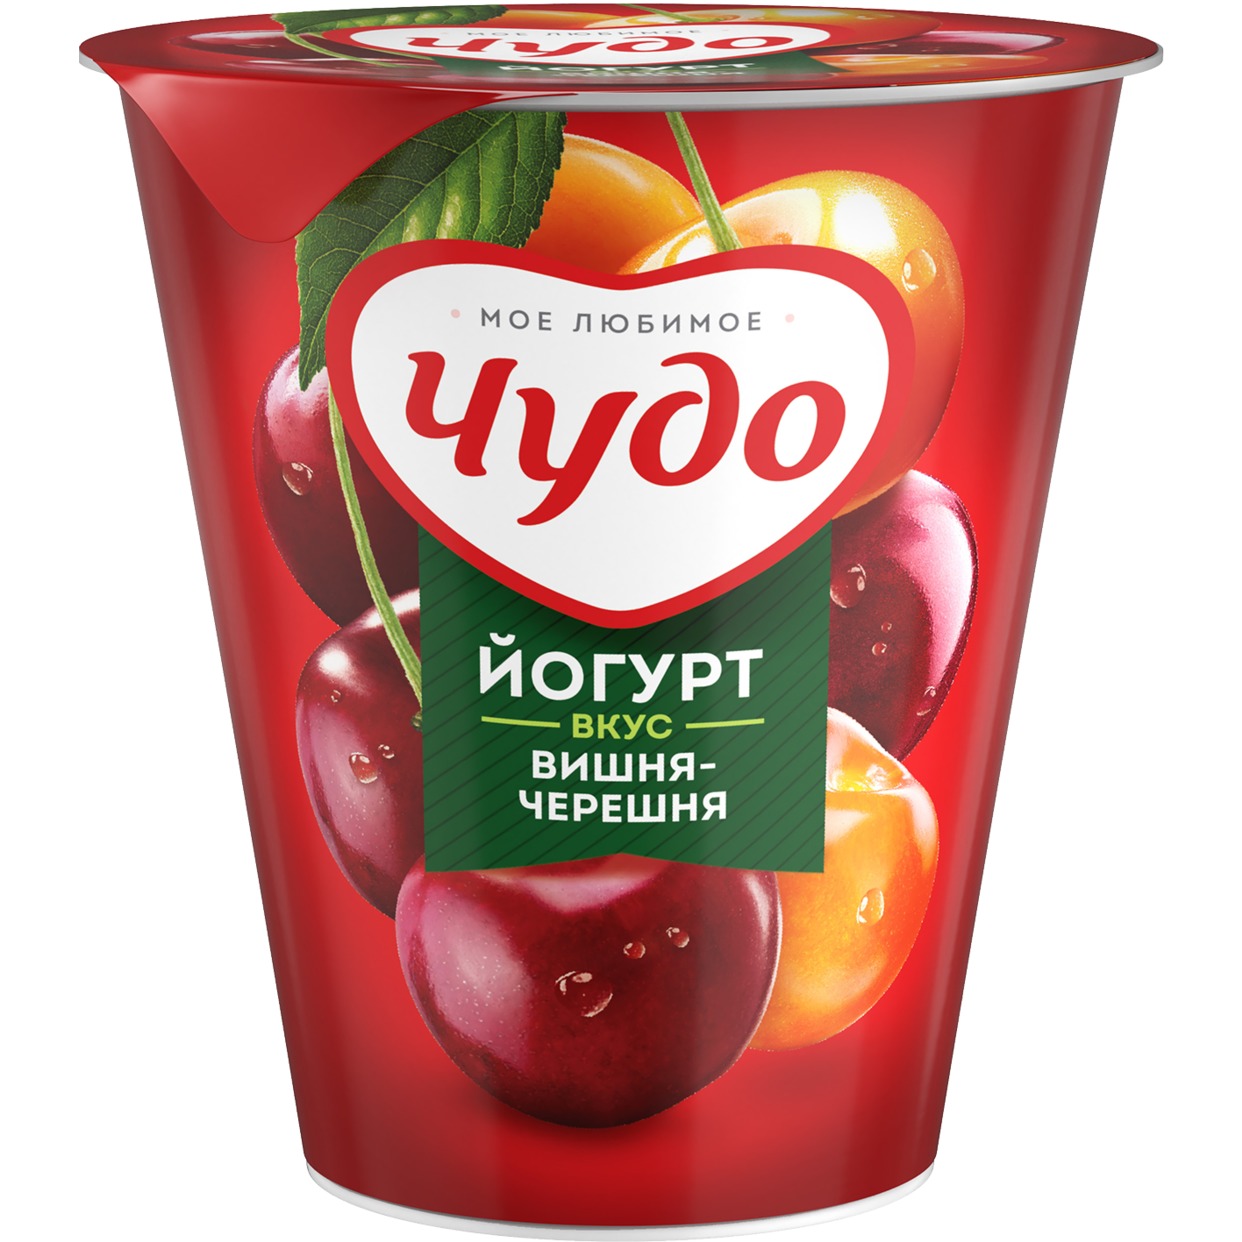 Йогурт фруктовый Чудо Вишня-Черешня 2.5% 290г по акции в Пятерочке